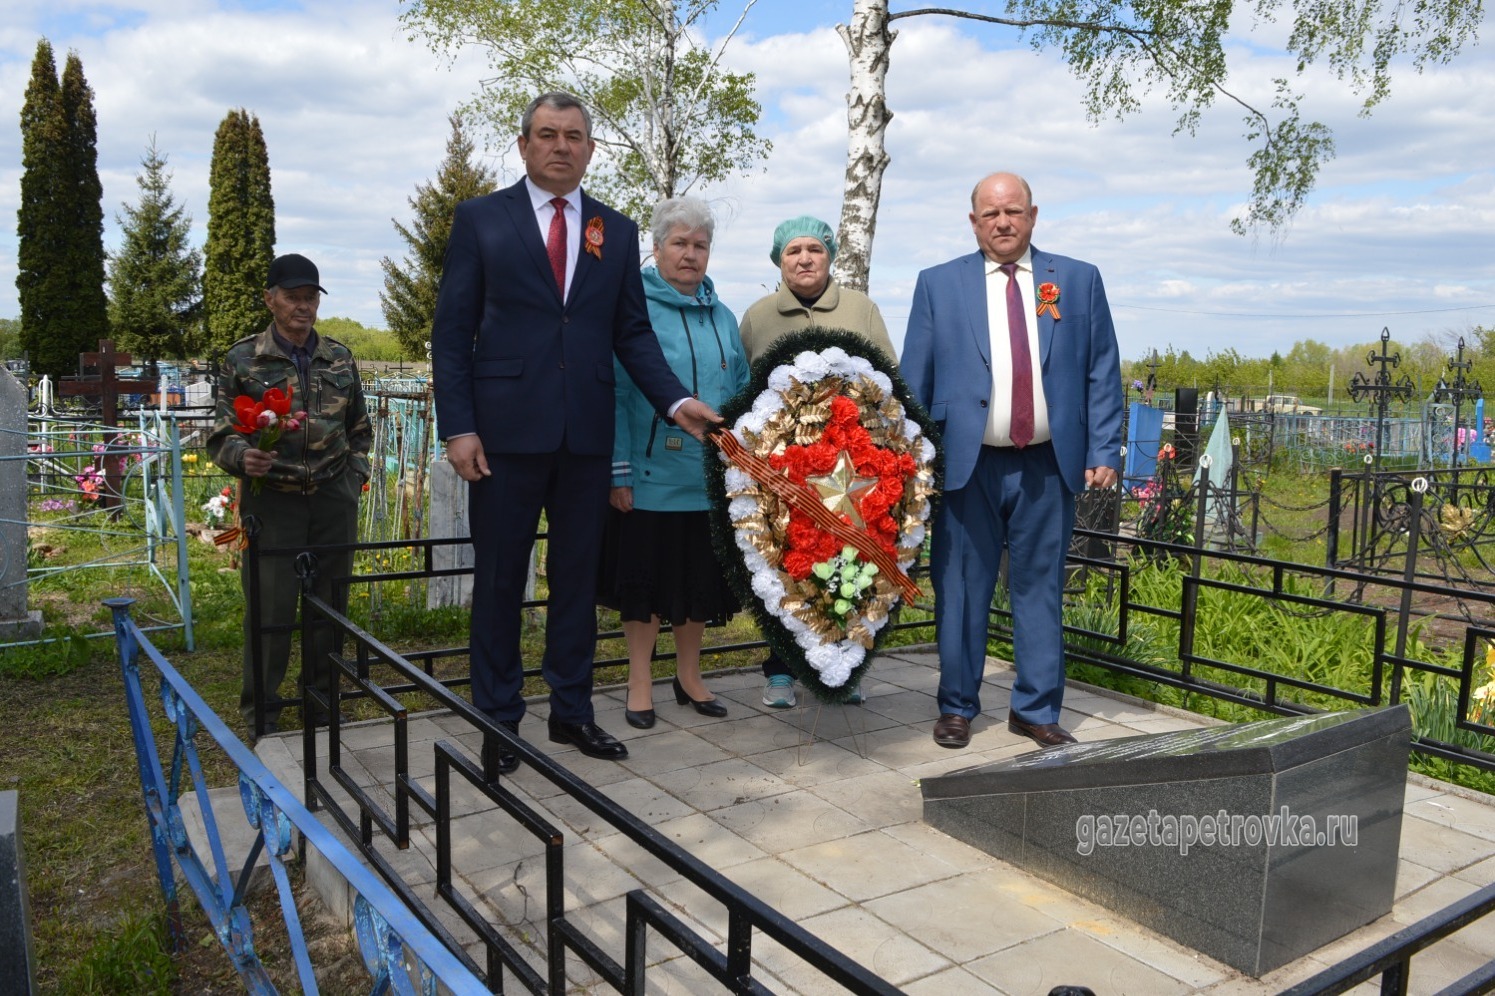 Сергей Ефанов и Олег Орлов возлагают венок к воинскому захоронению